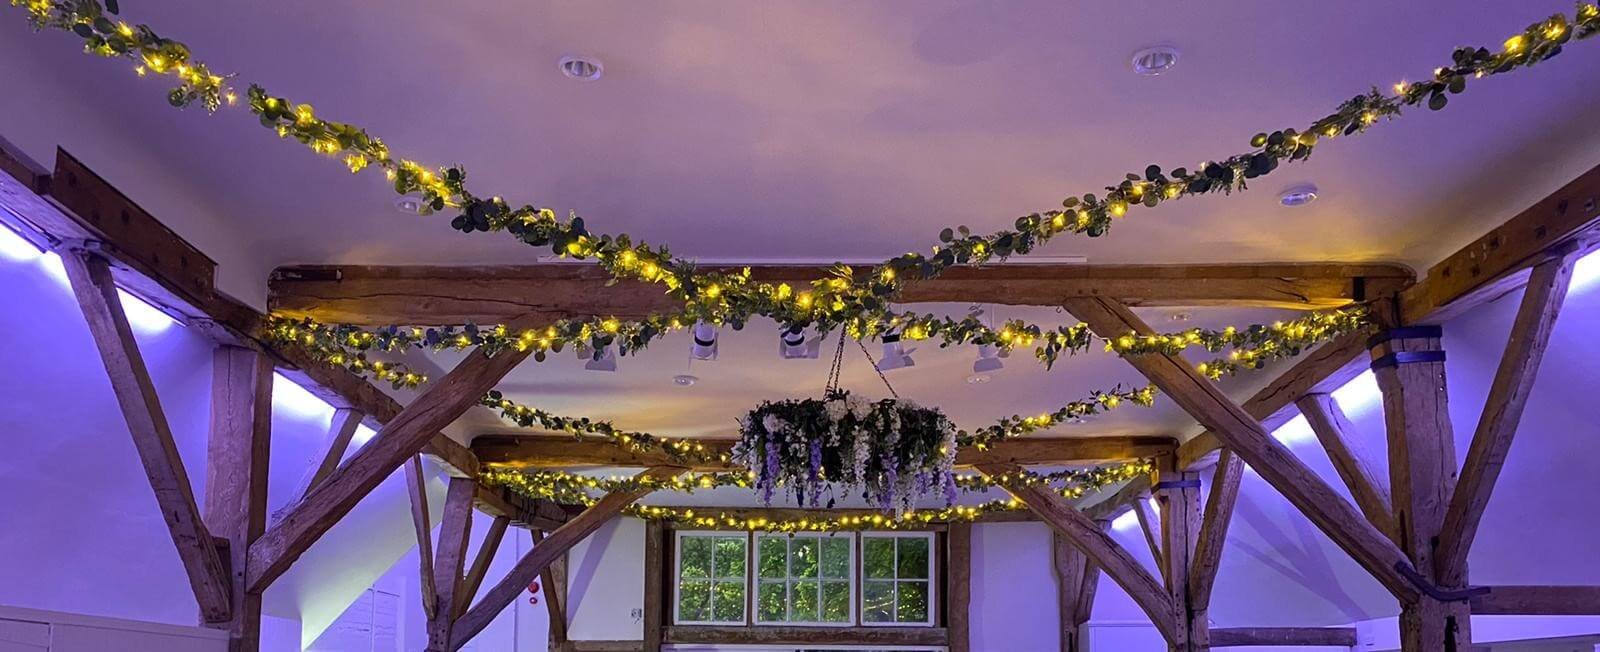 Burymanorbarn_fairylight_foliage_ceiling_decor_wedding crop.jpg